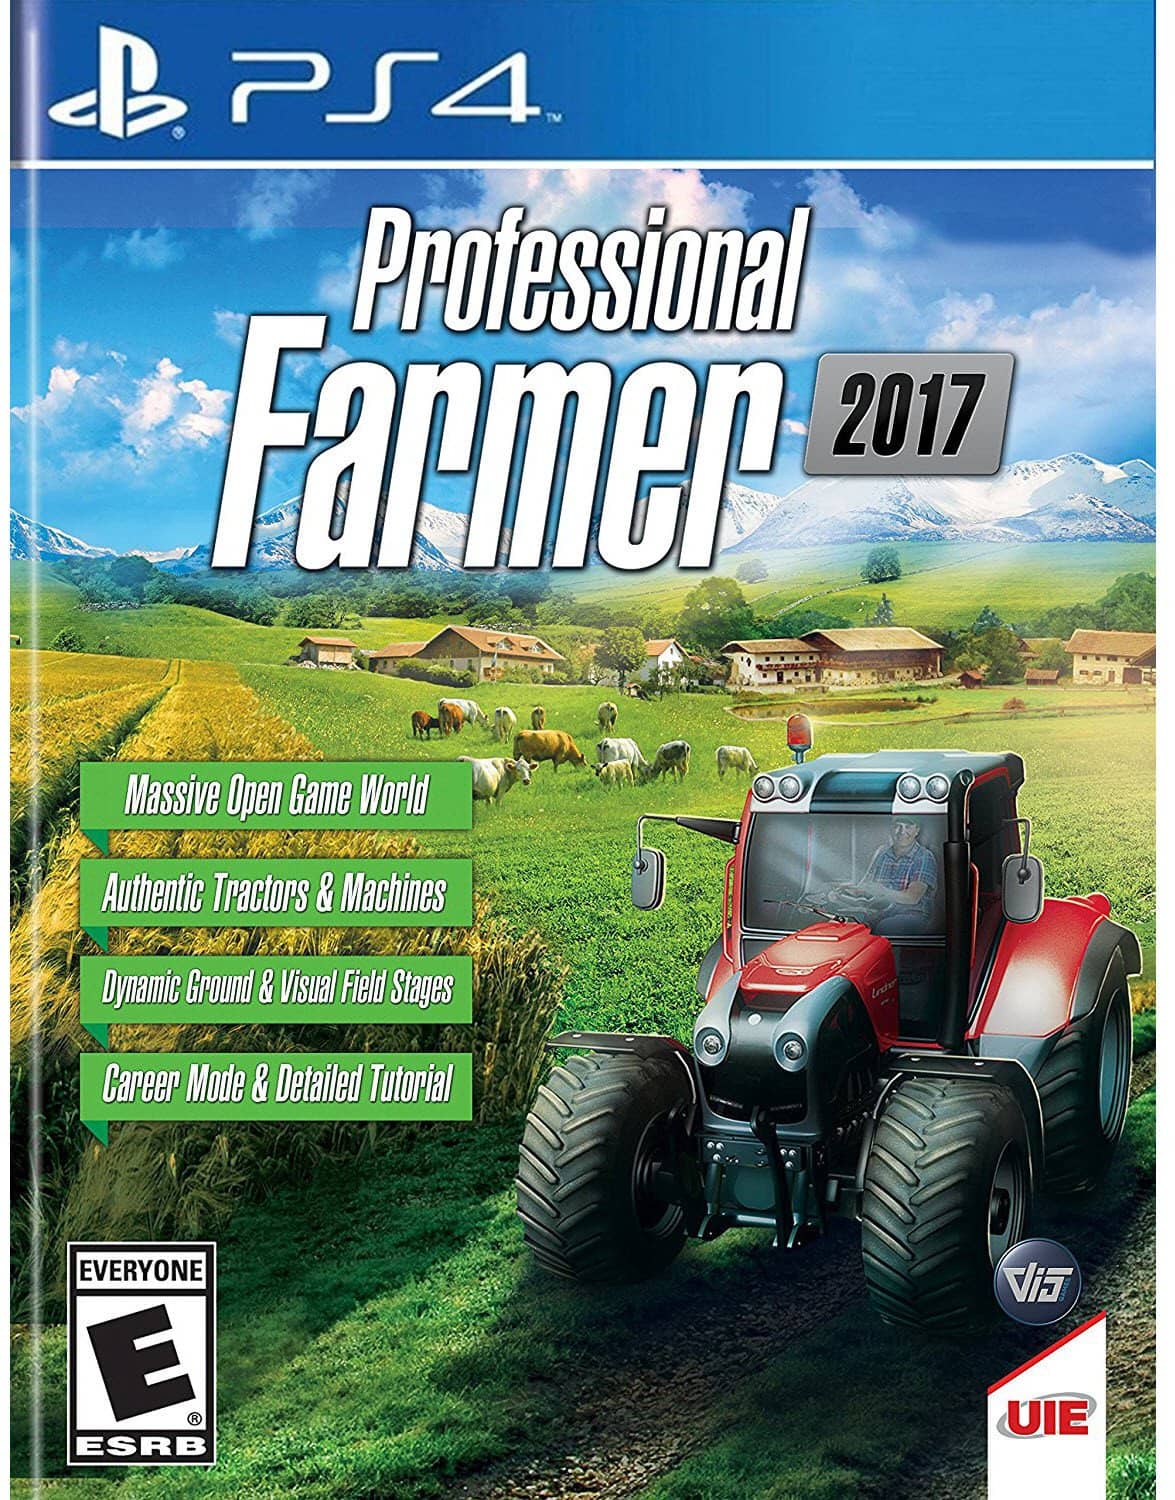 Professional Farmer 2017 - PlayStation 4 - PlayStation 4 2017 Edition